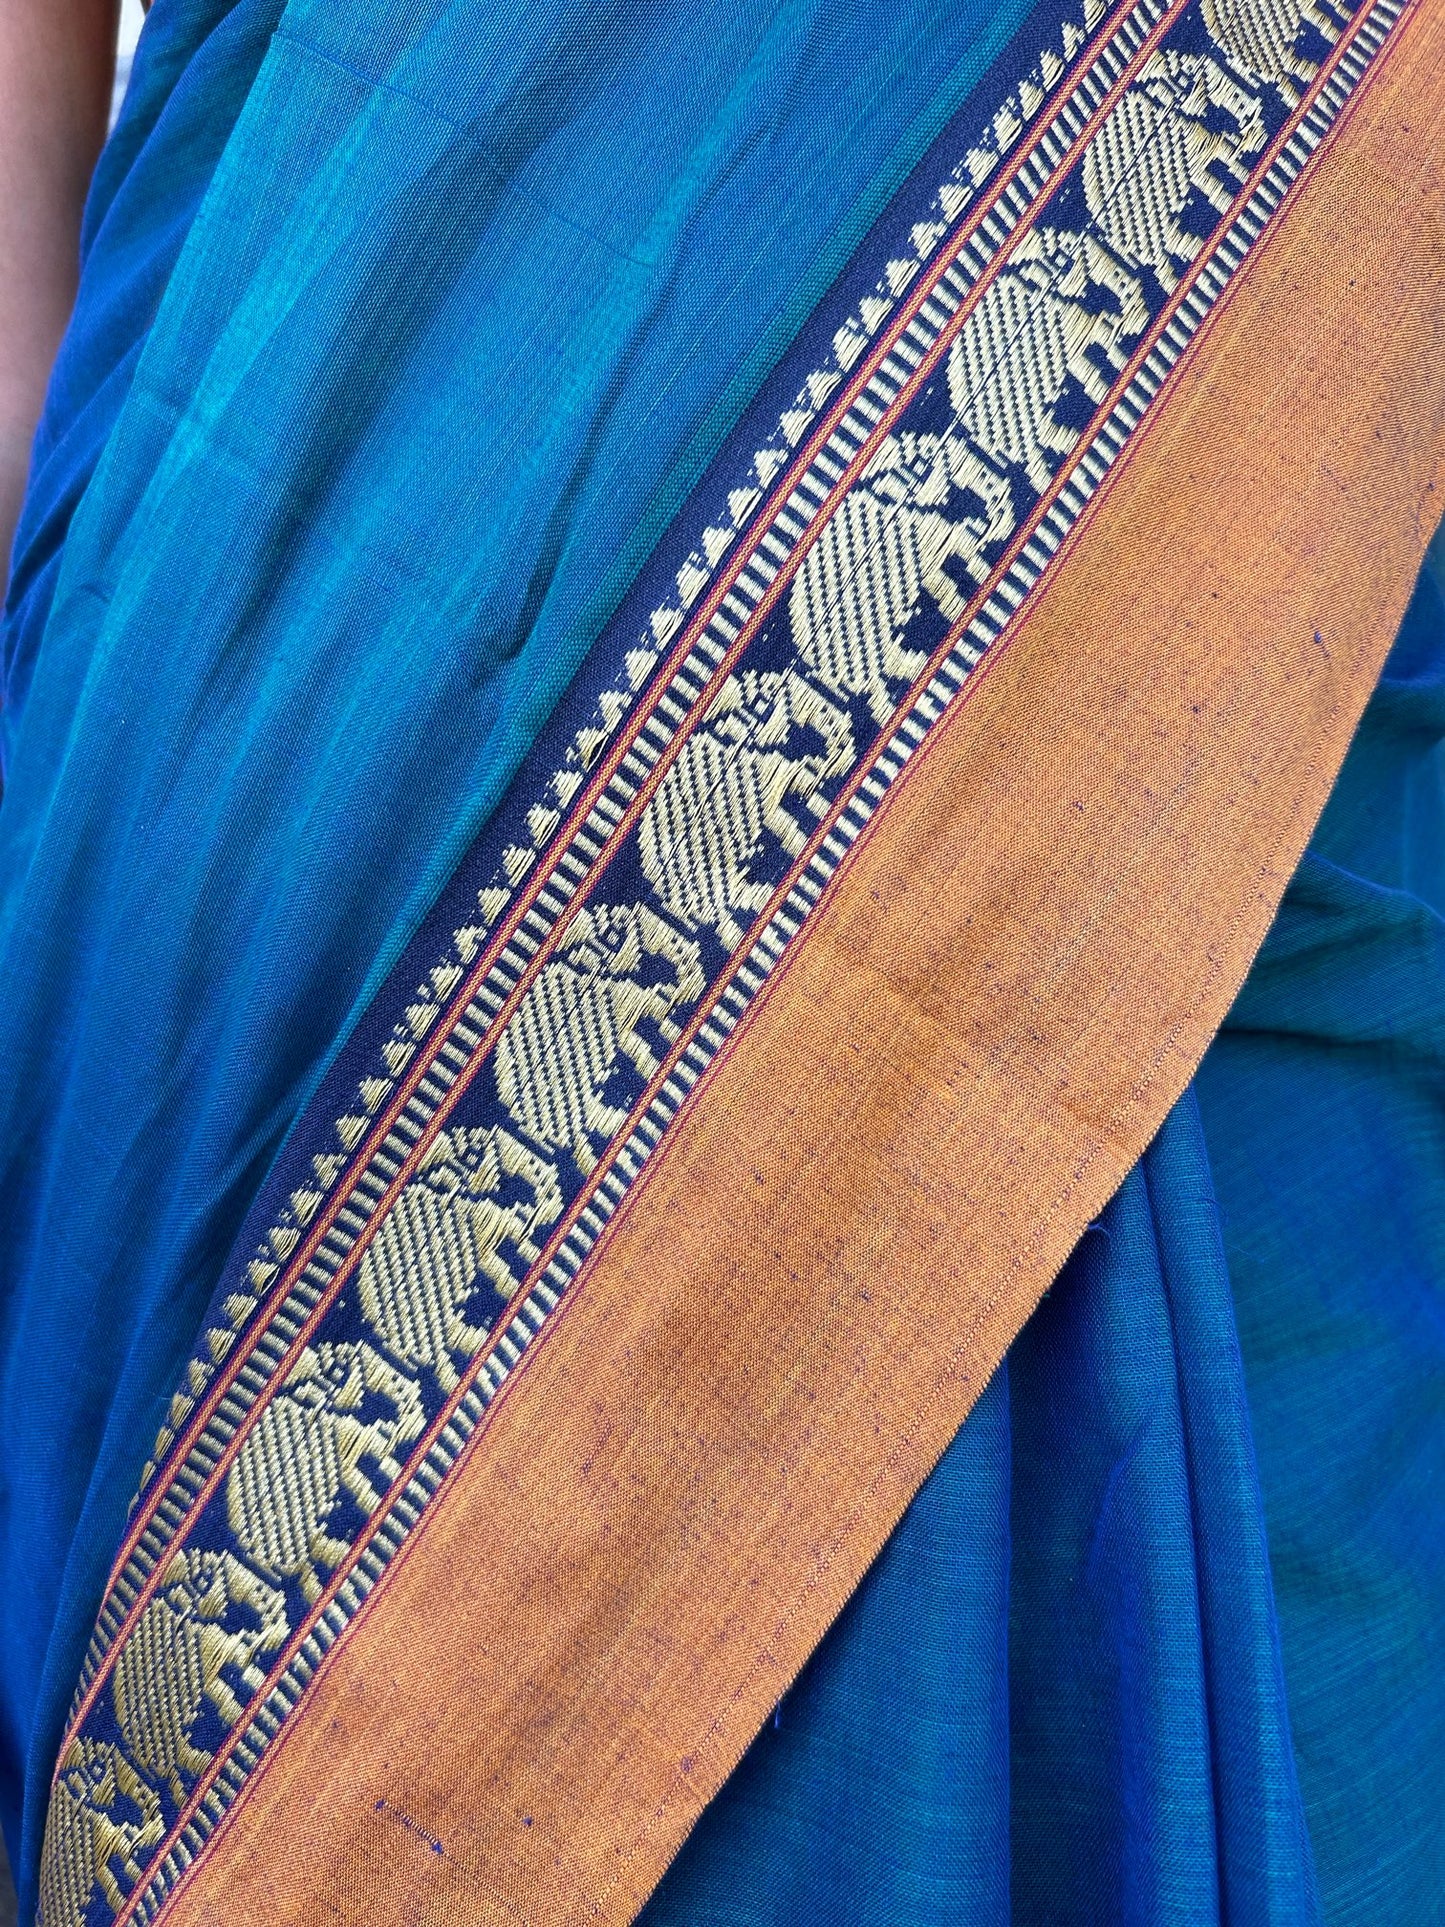 Blue Narayanpet saree.